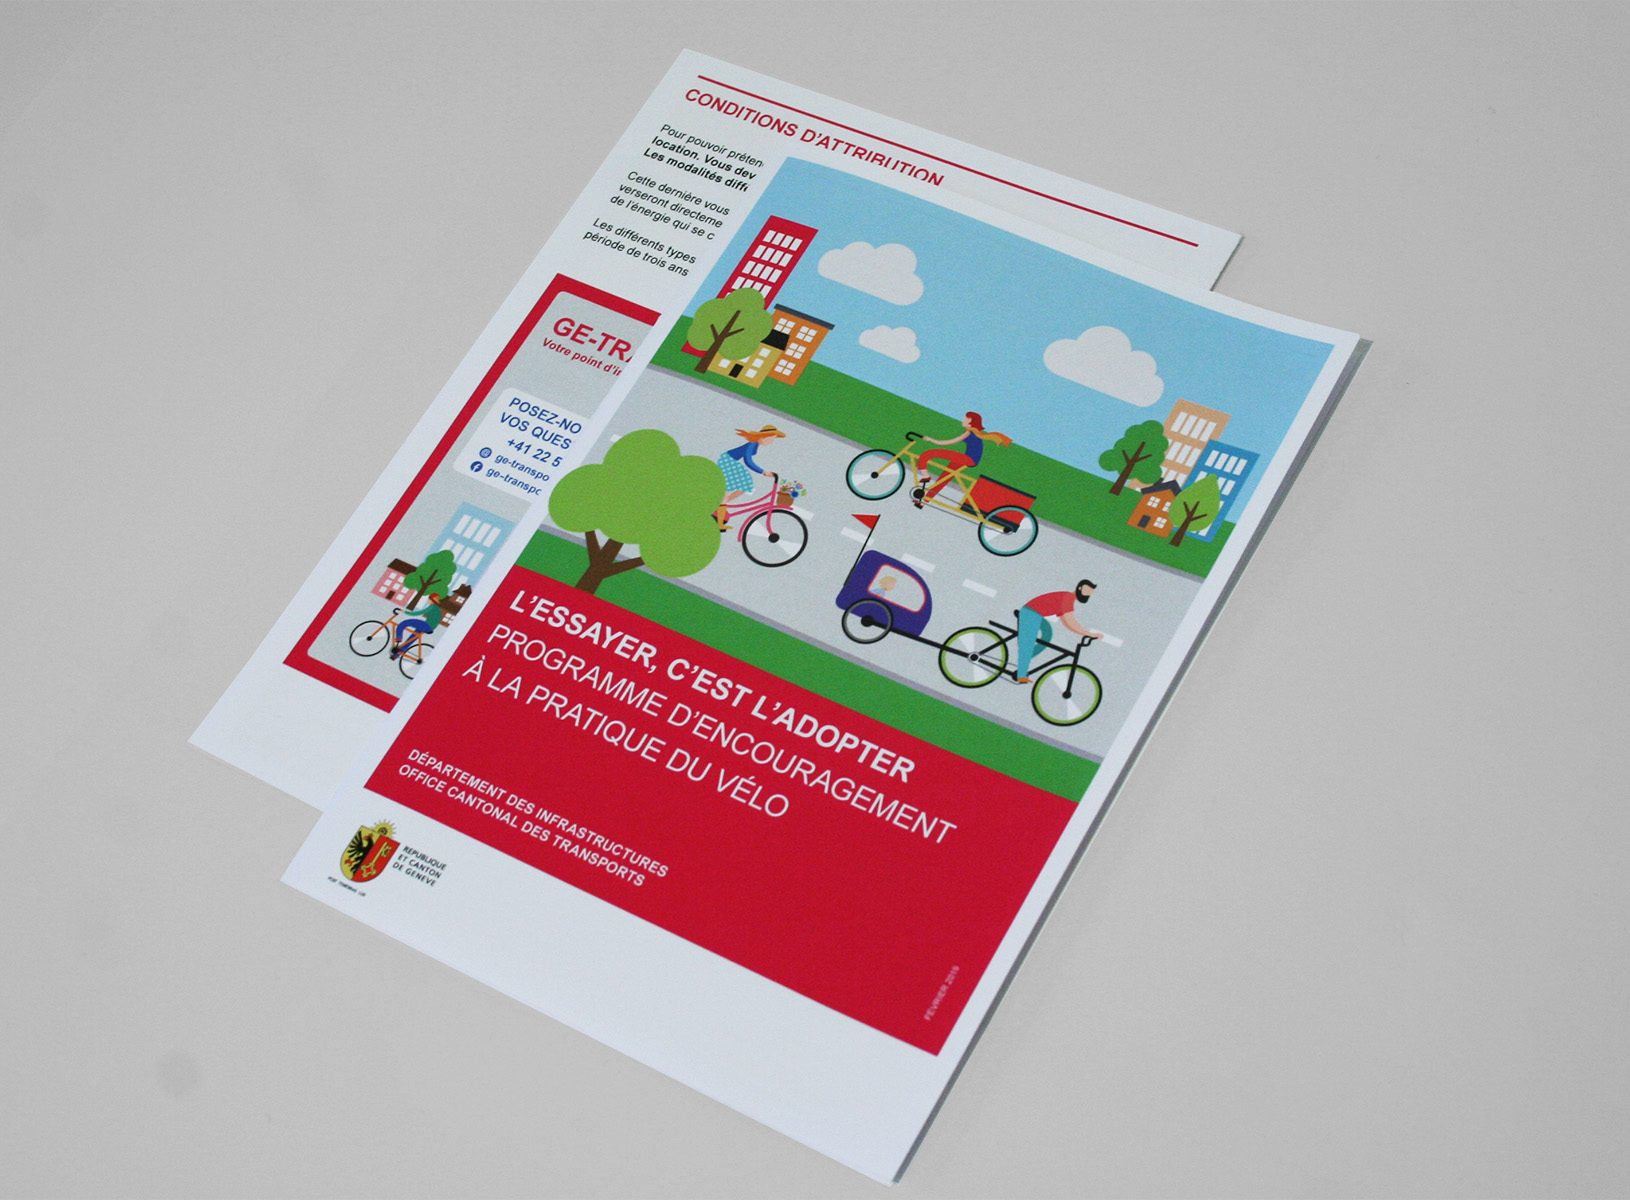 subvention vélo flyers A5 Etat de Genève 2019. Graphic et digital design chloé genet